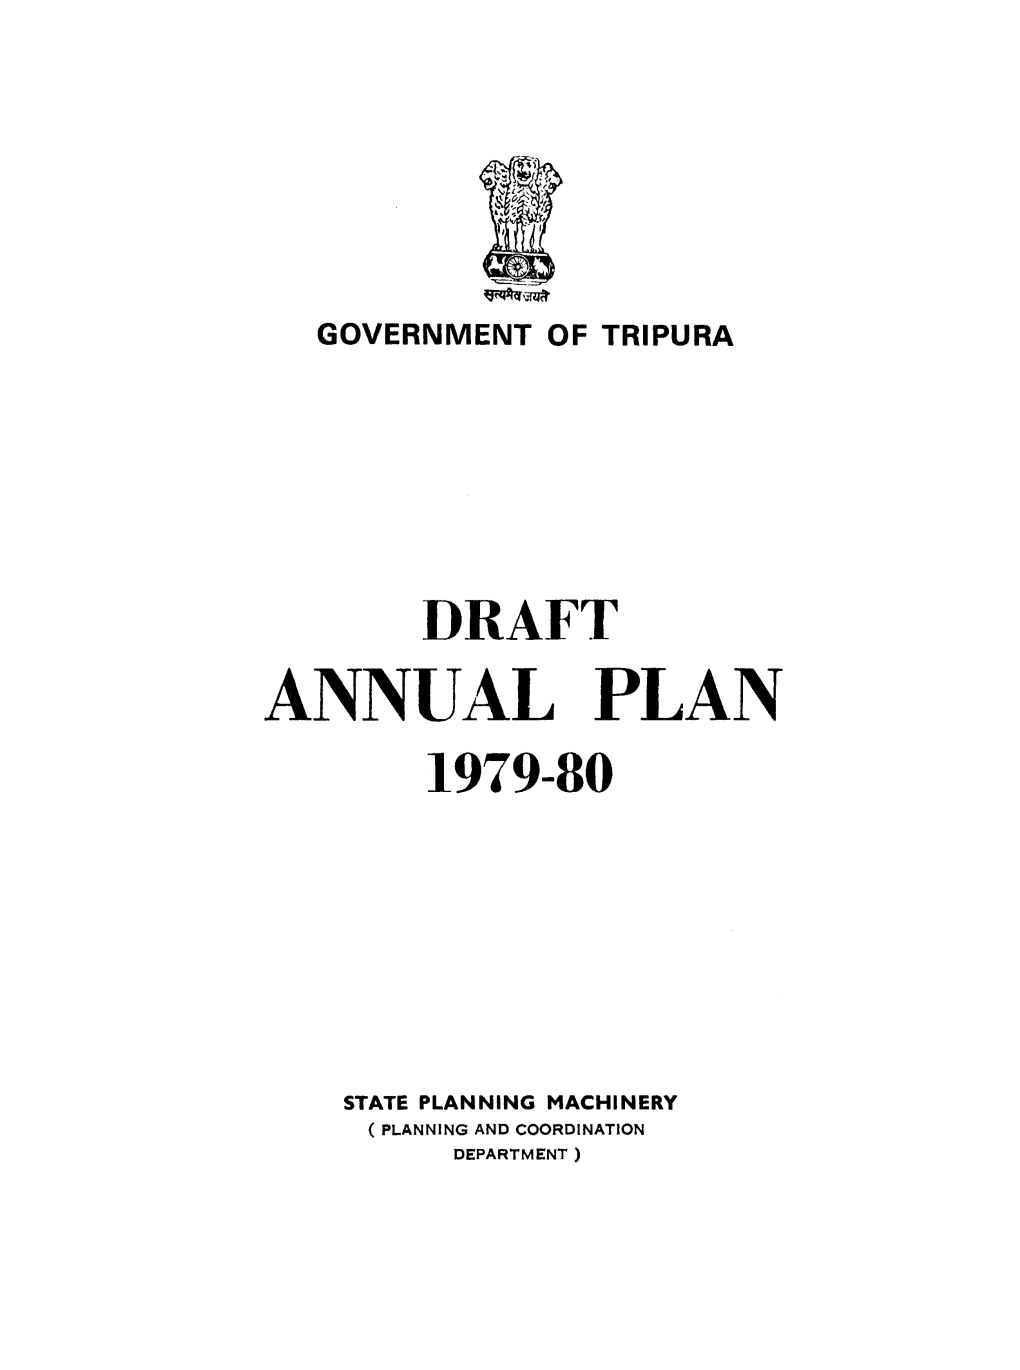 Annual Plan 1979-80